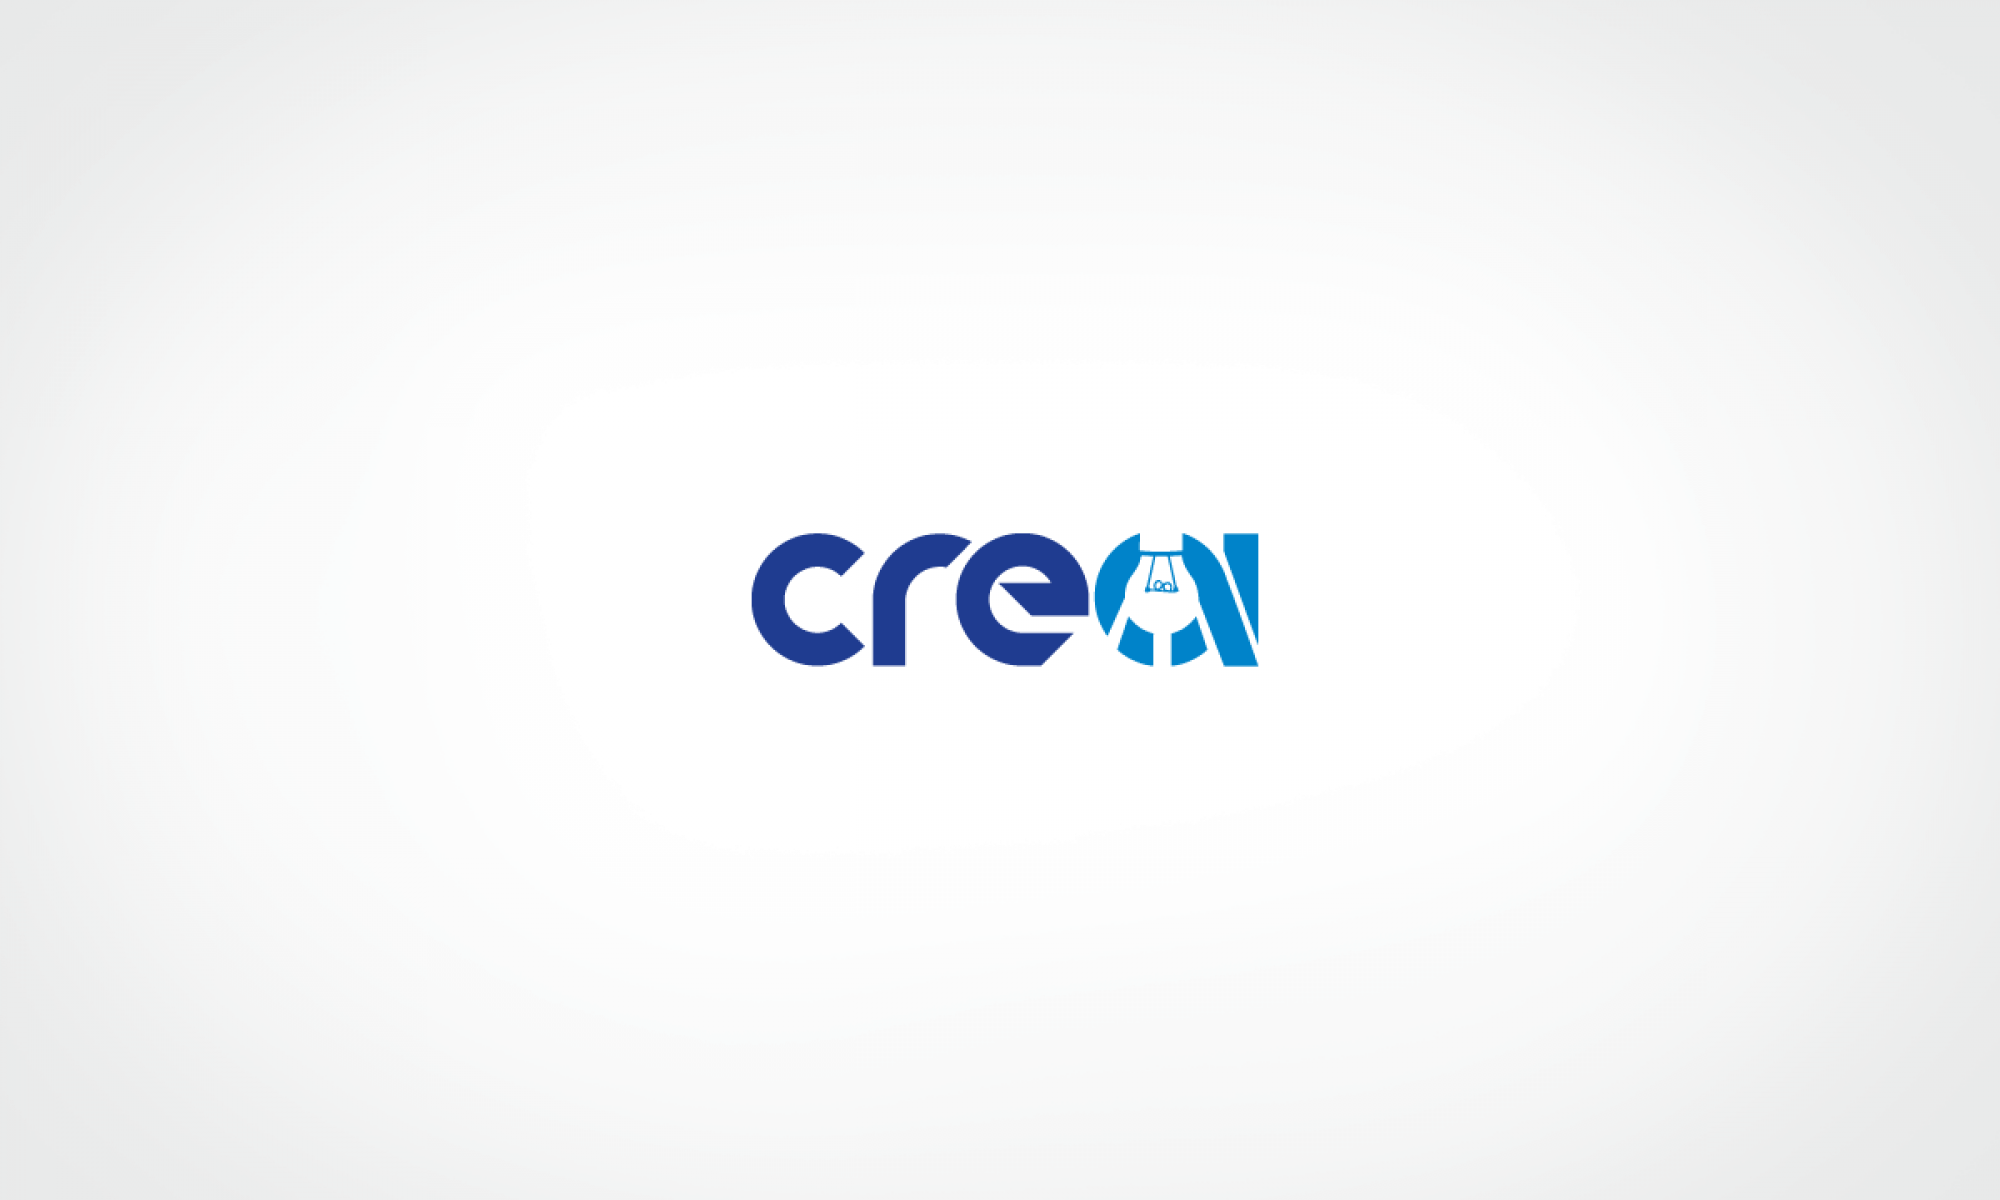 CREA2